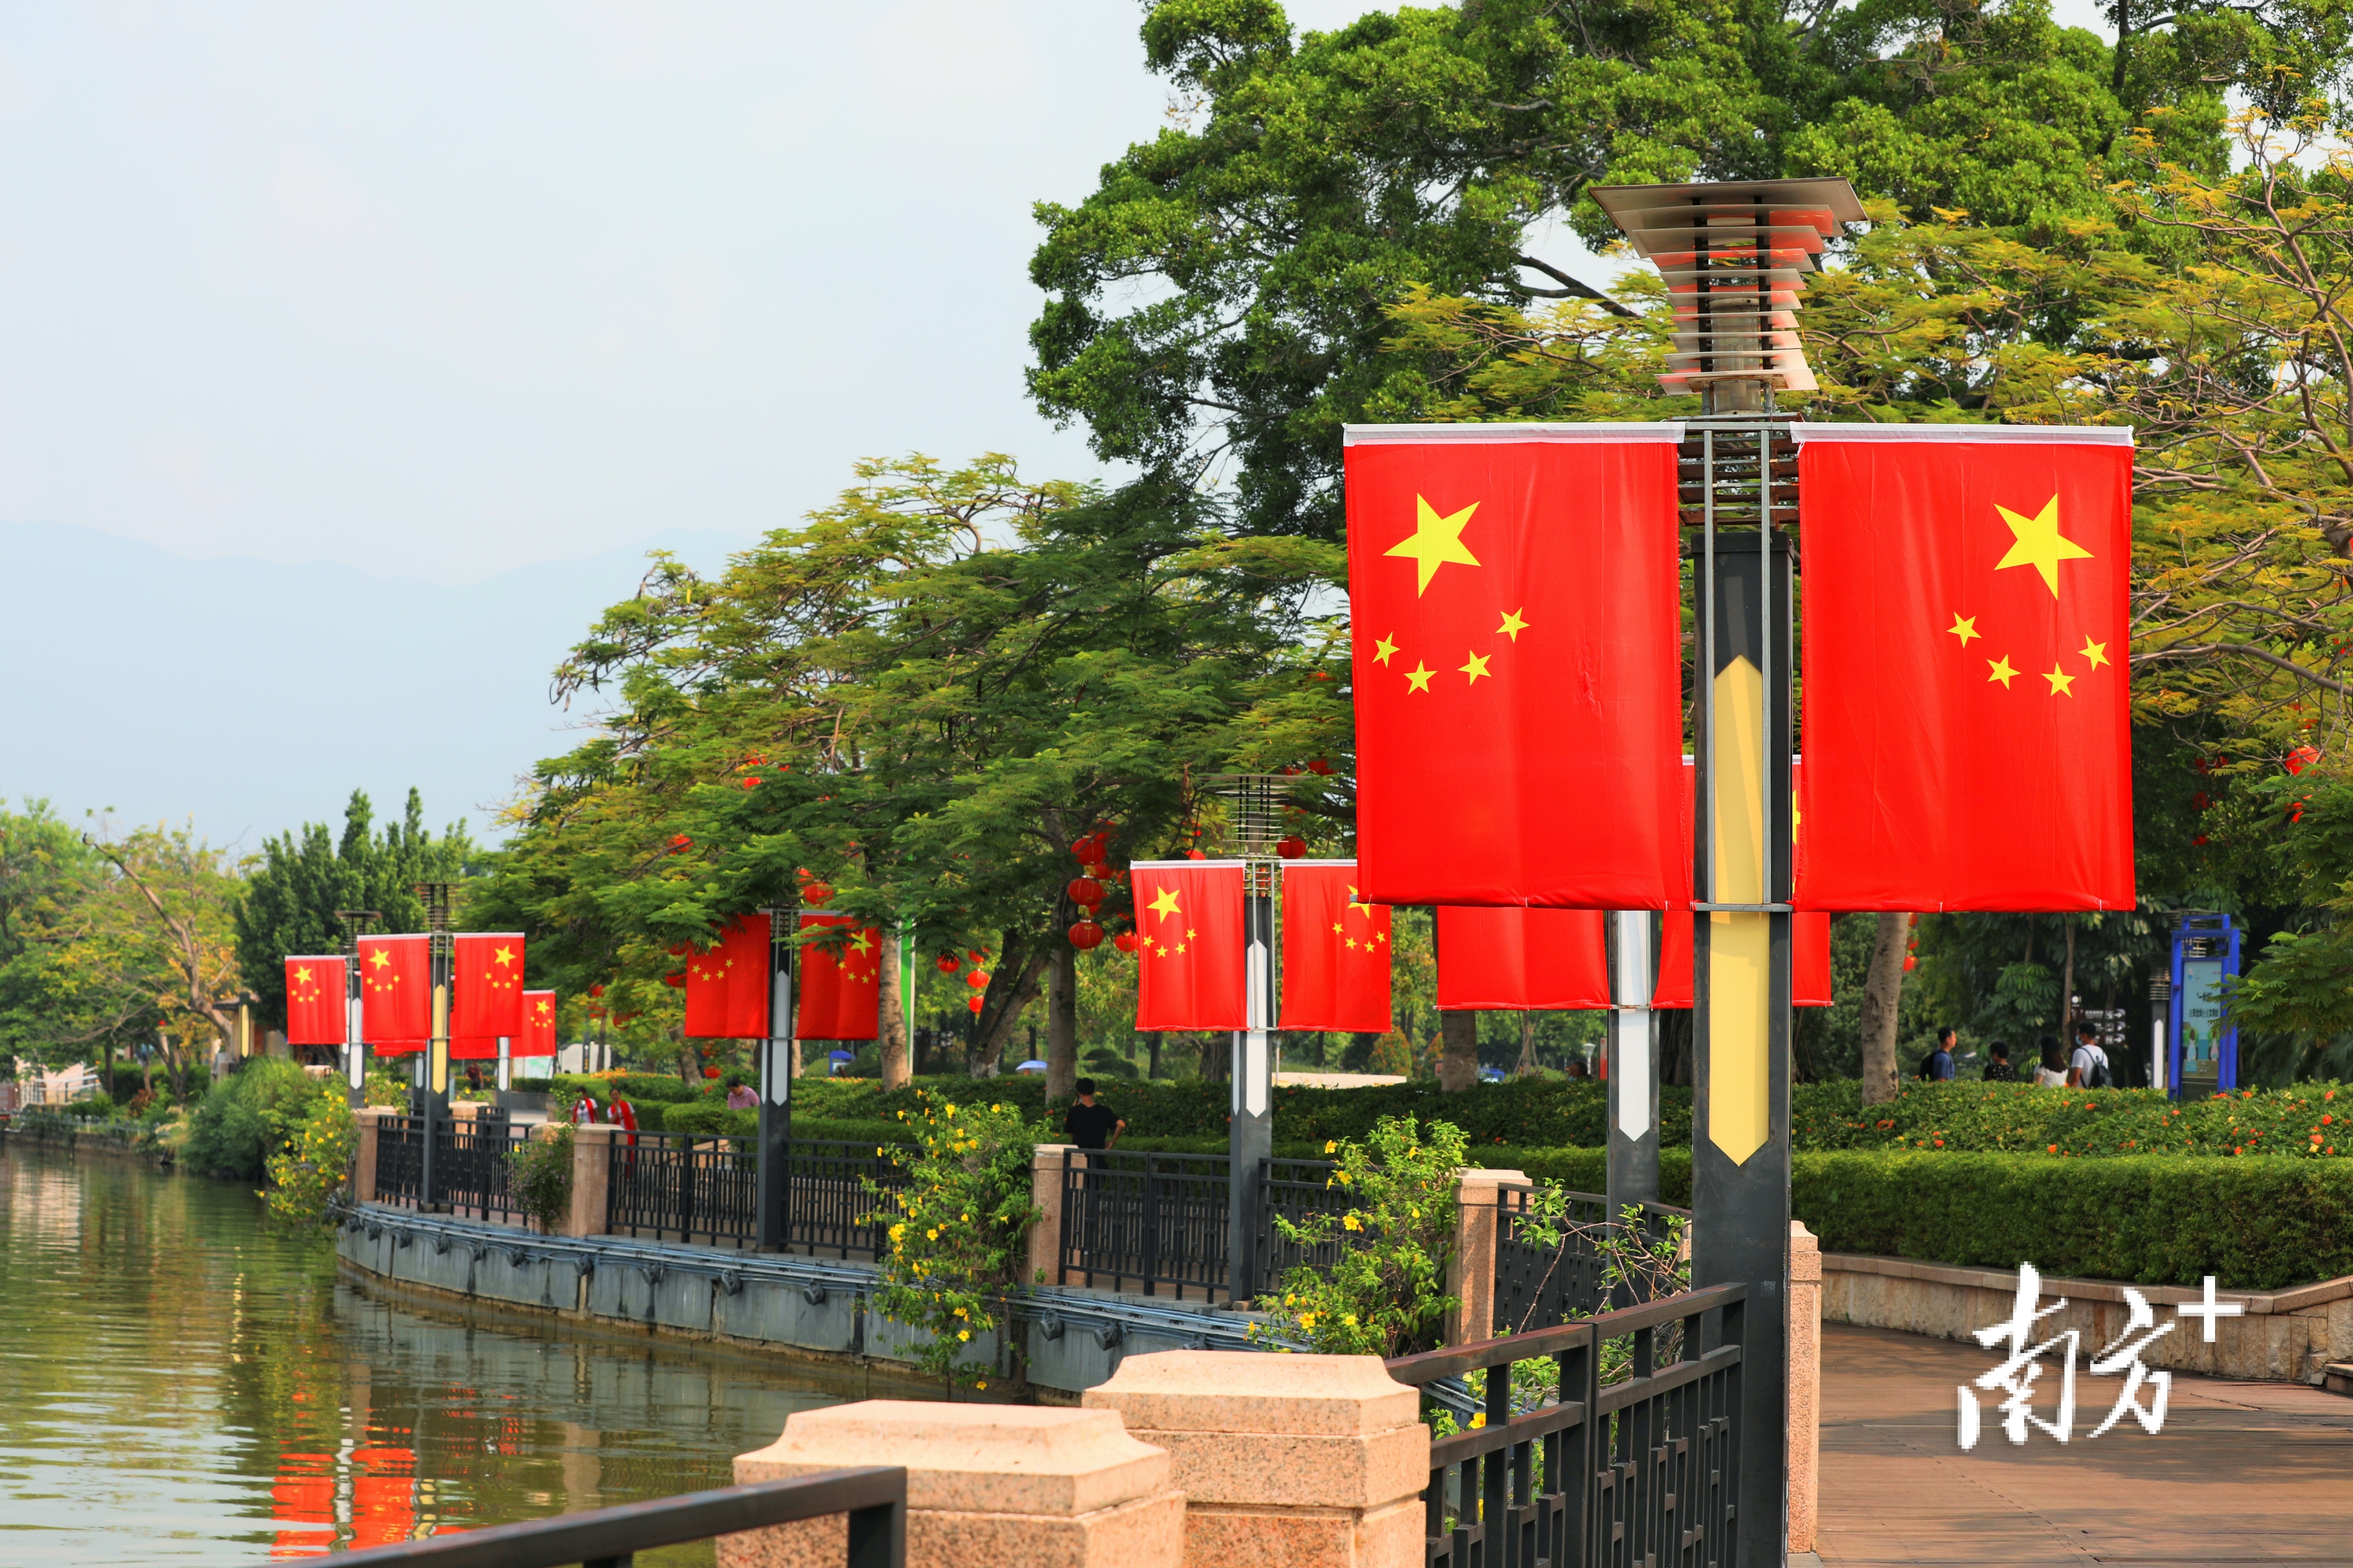 星湖亲水平台亦挂上了鲜艳的红旗。 南方拍客 聂伟健 摄